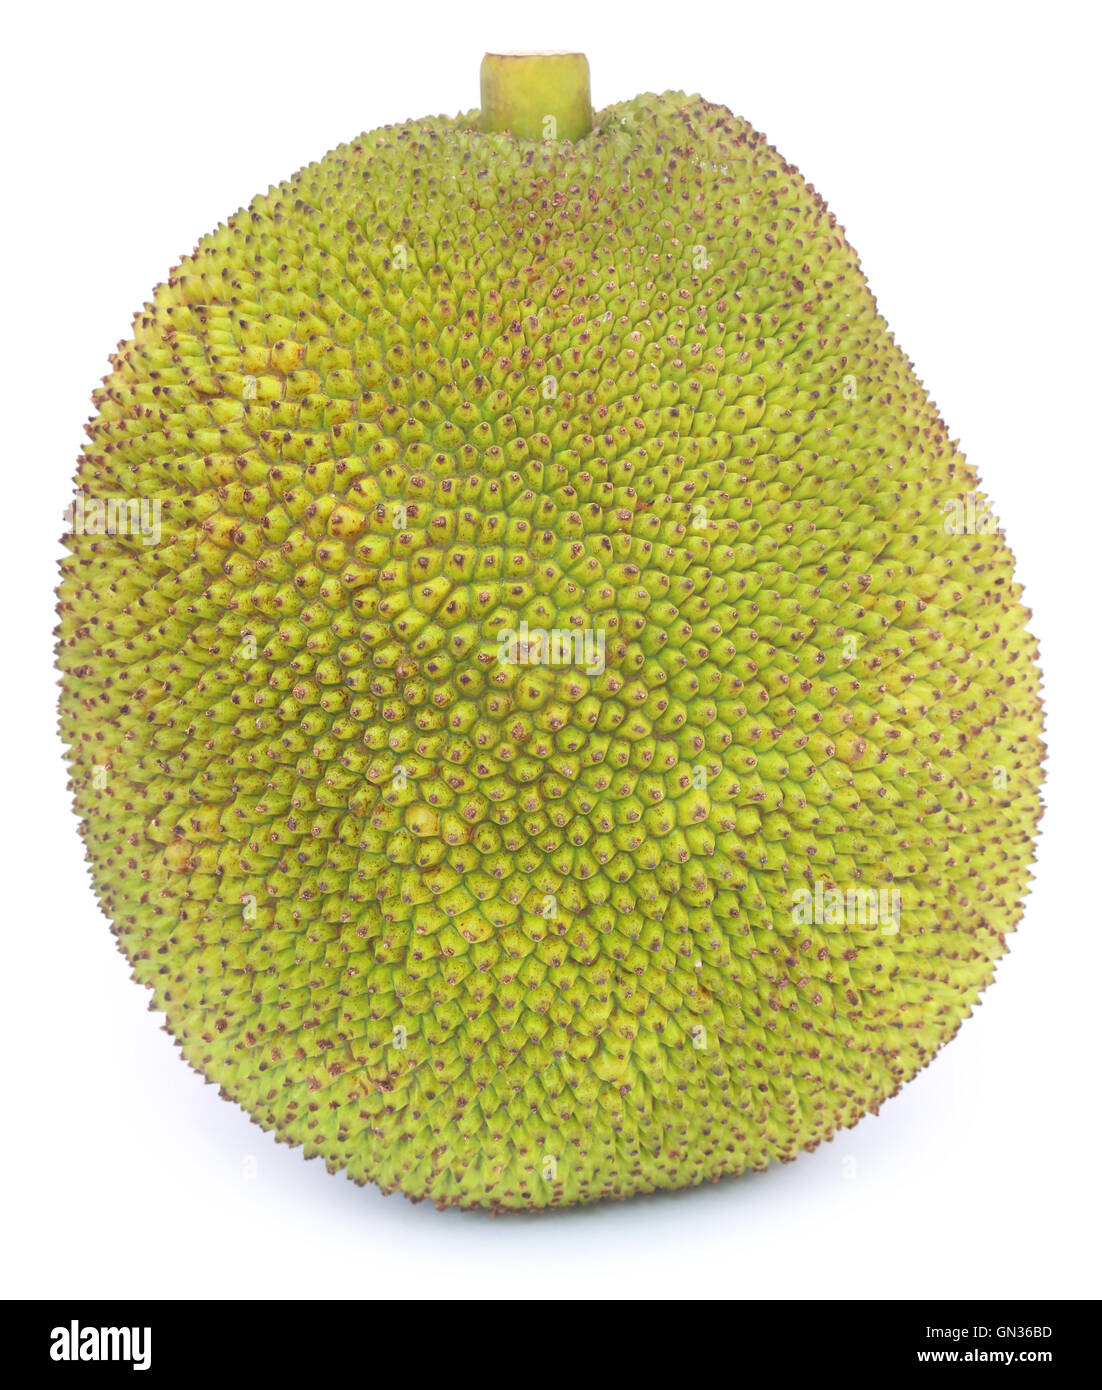 Jackfruit over white background Stock Photo